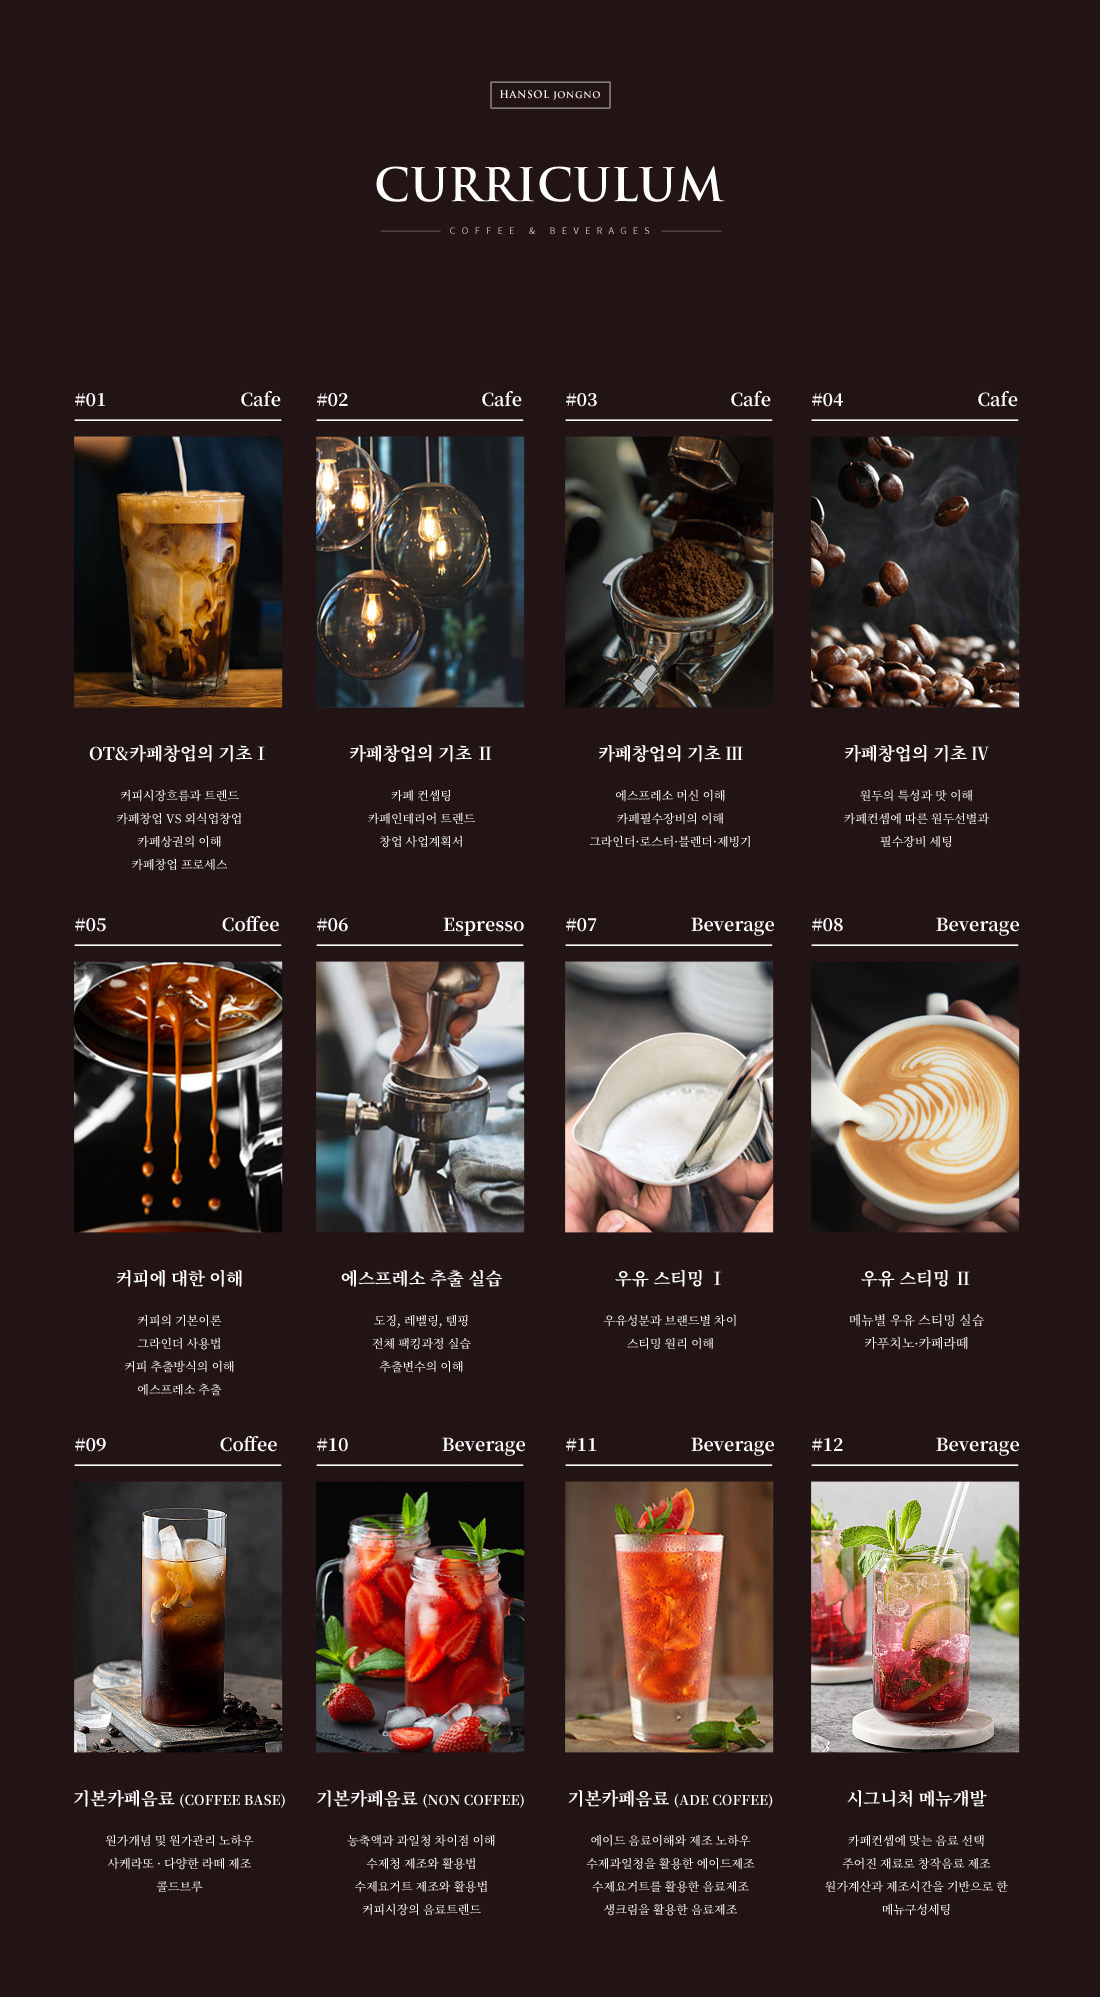 카페창업
전문과정
